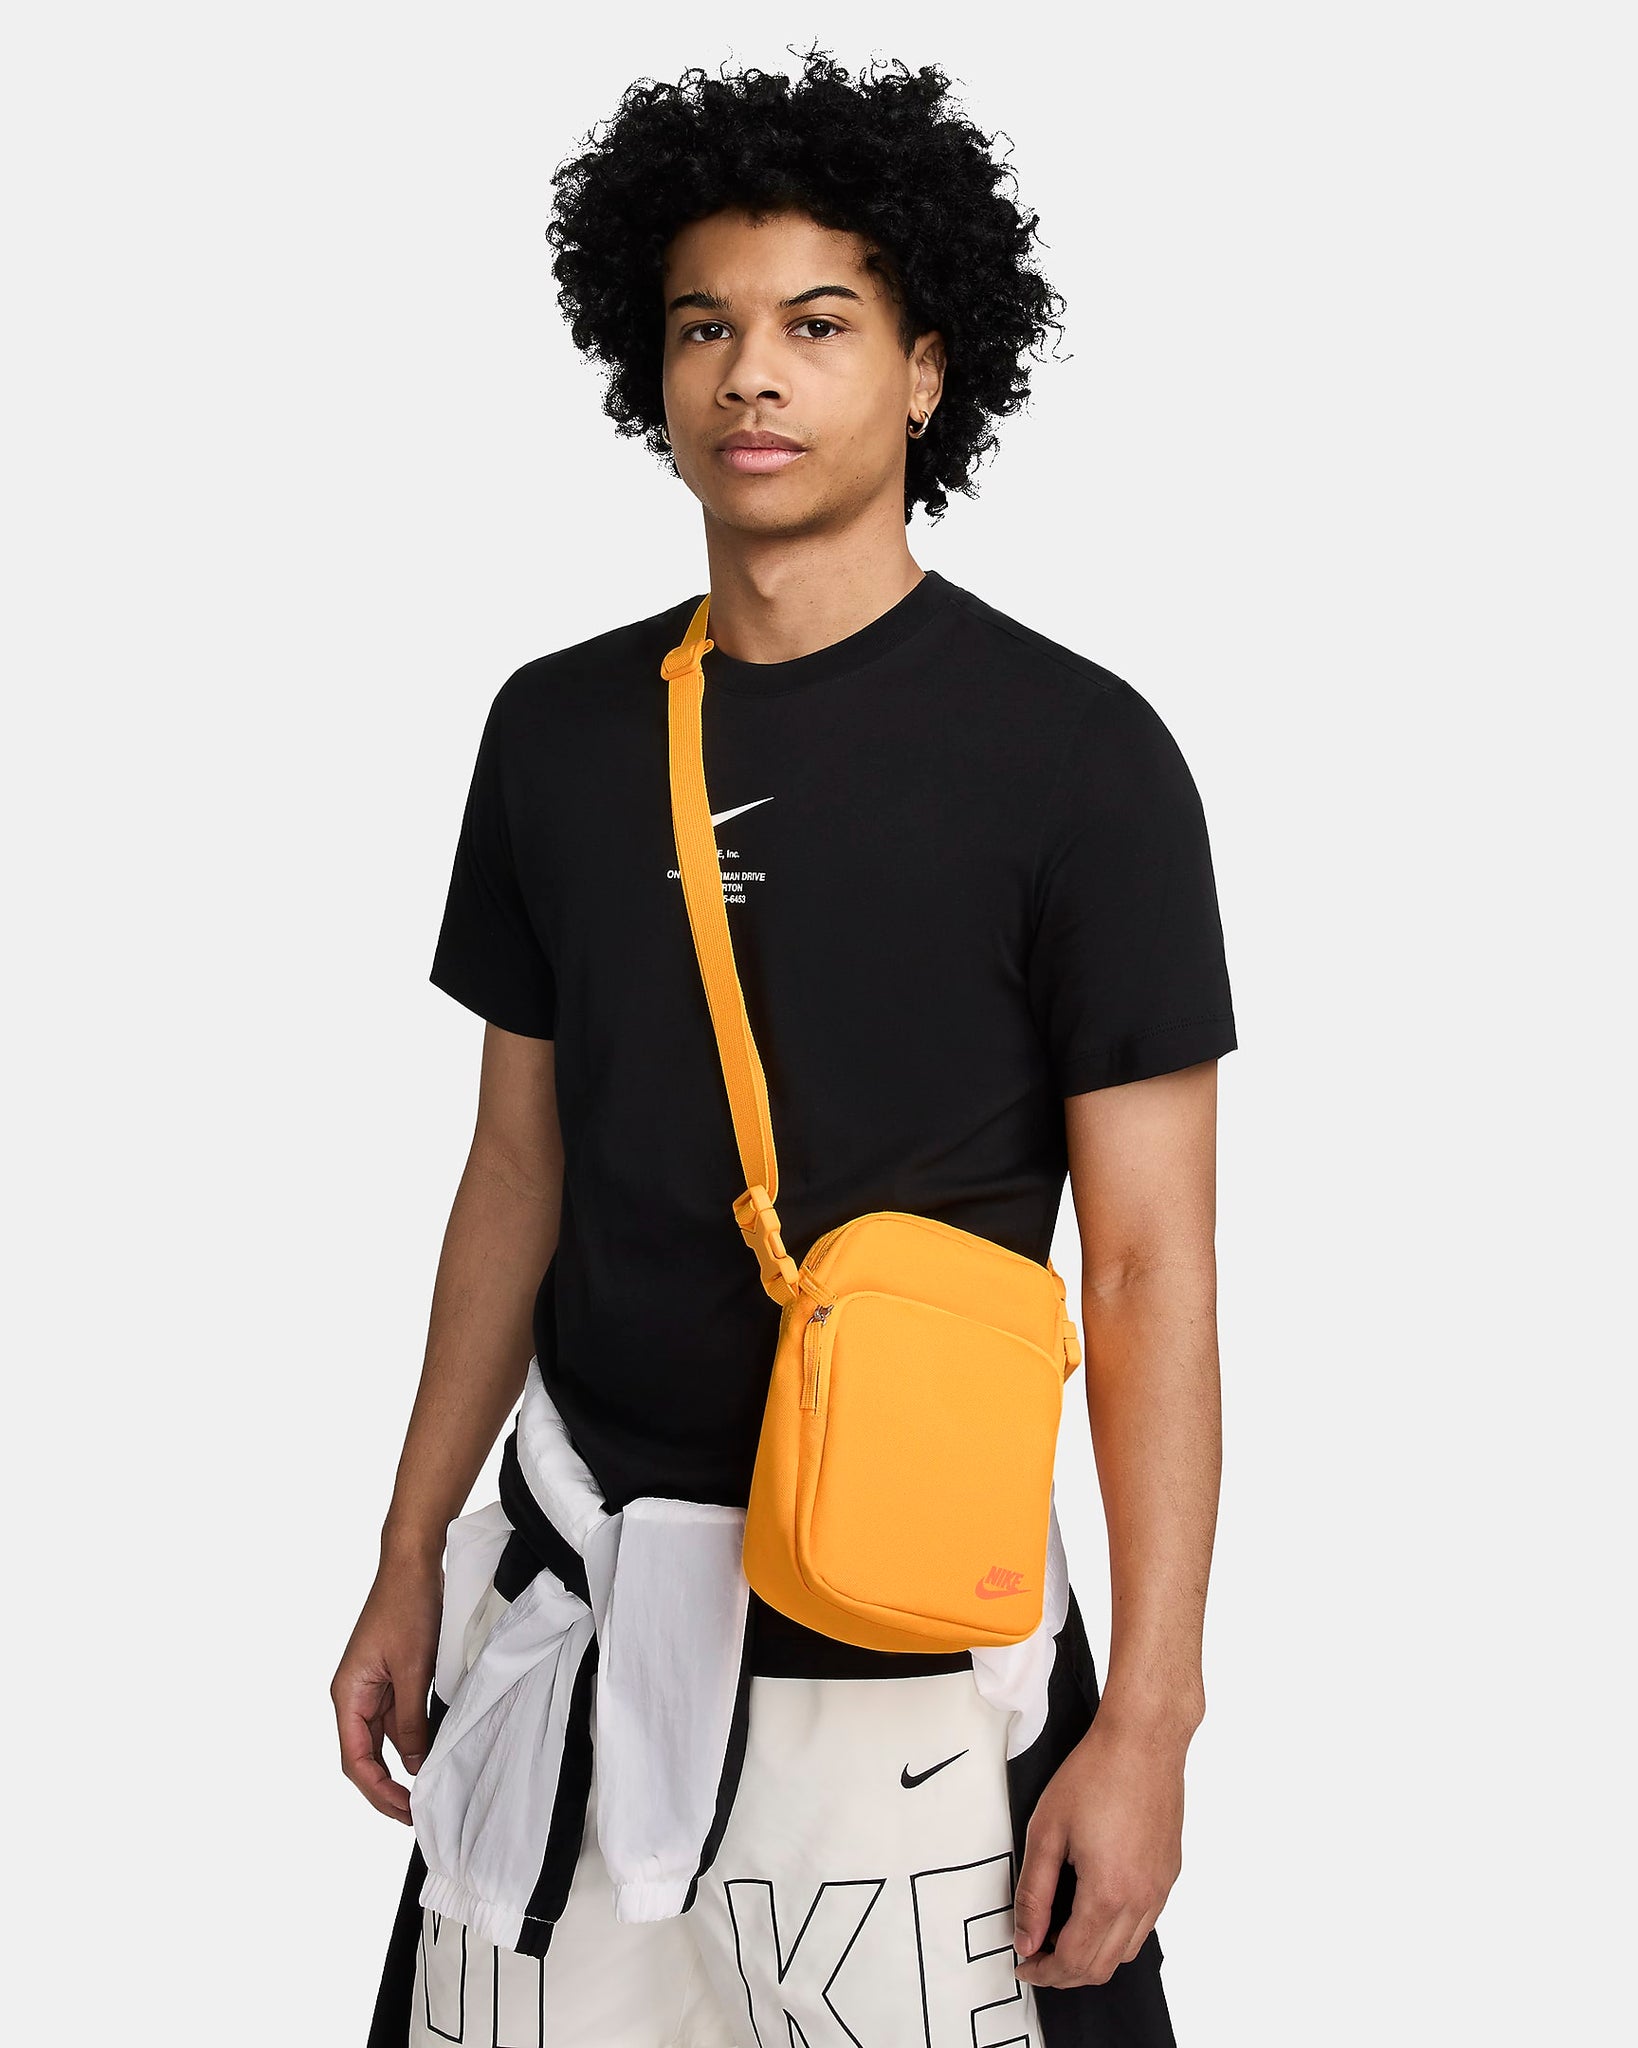 Nike Heritage Crossbody bag (4 liters)